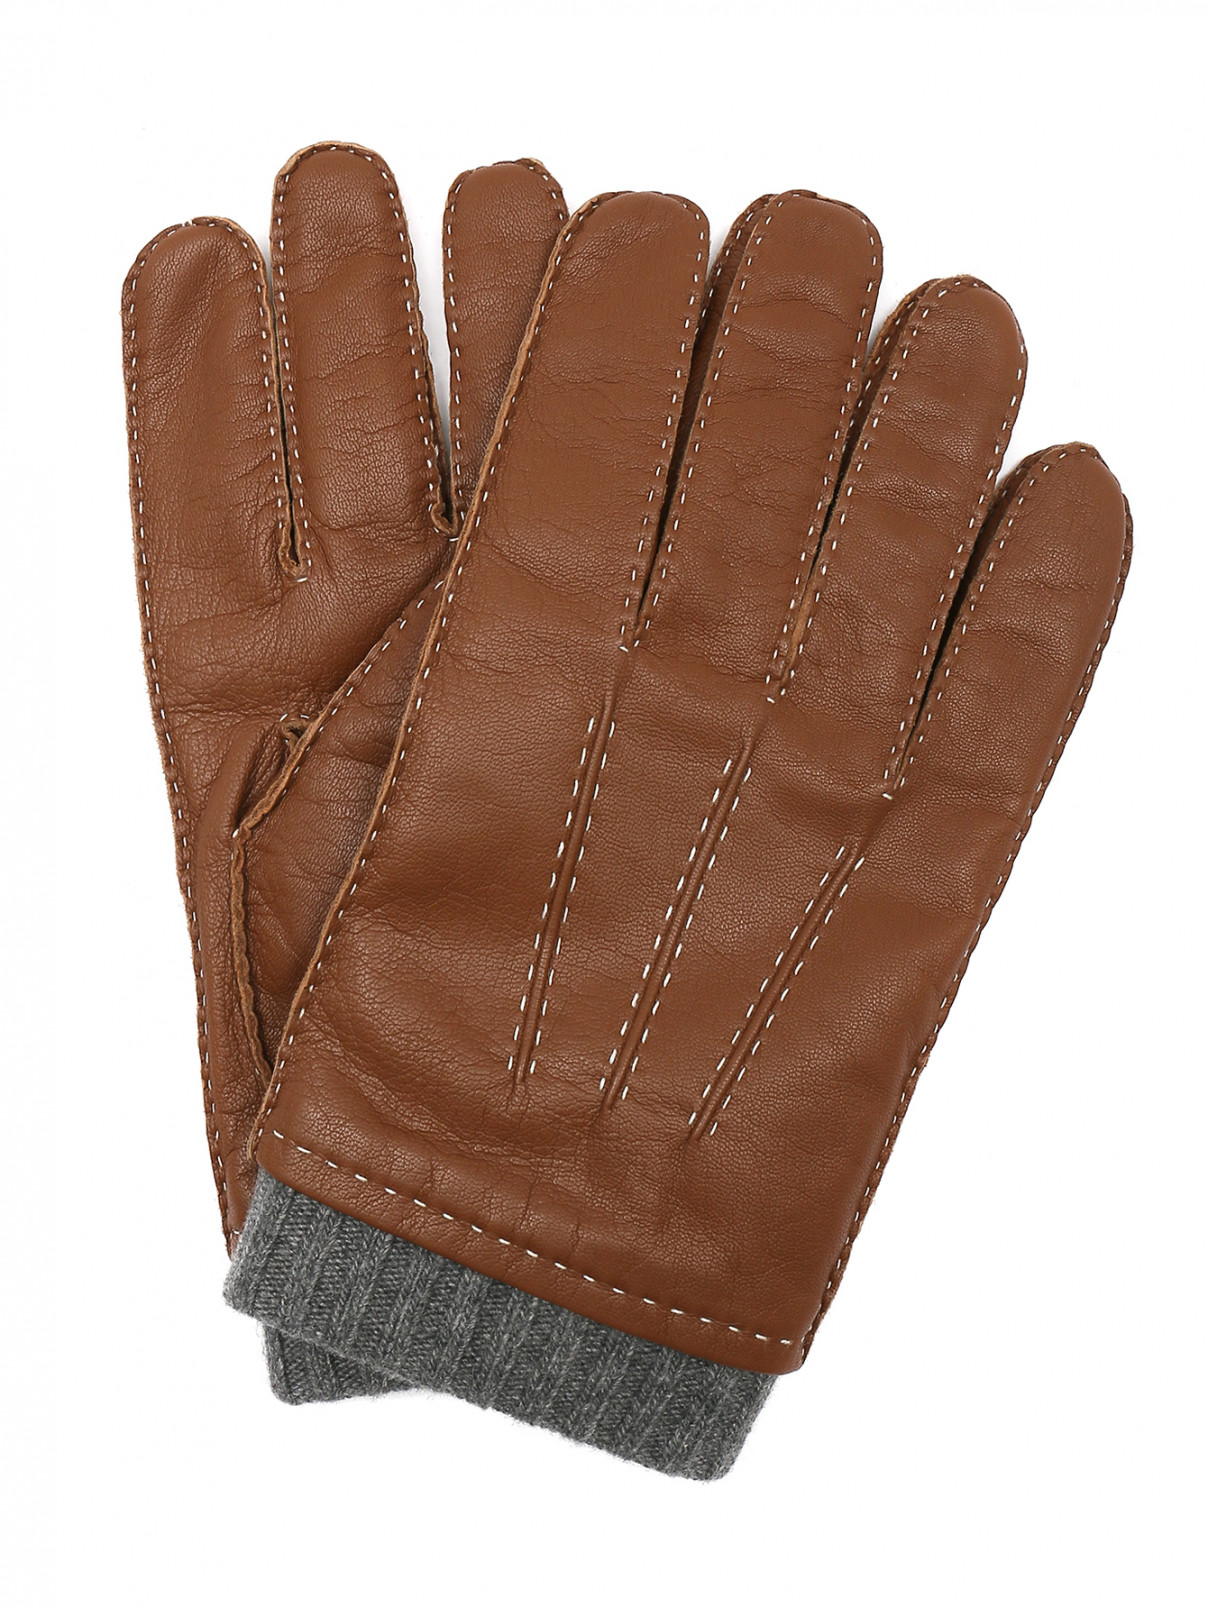 Перчатки из кожи с контрастной отделкой Portolano  –  Общий вид  – Цвет:  Коричневый